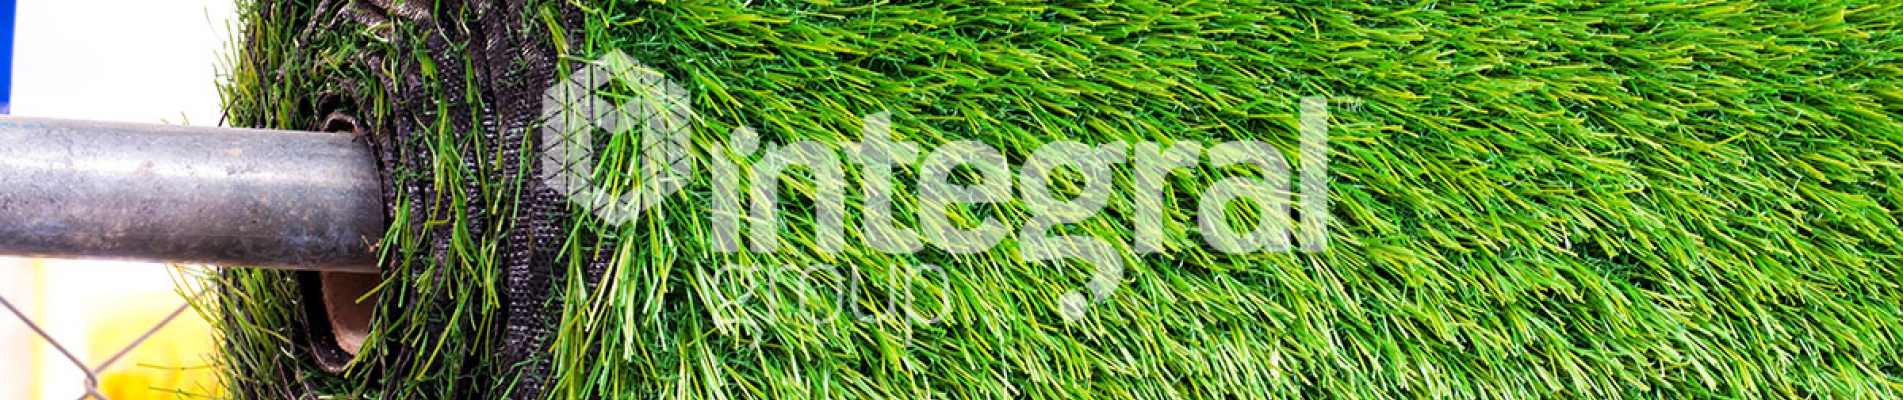 ما هي مزايا العشب الاصطناعي؟